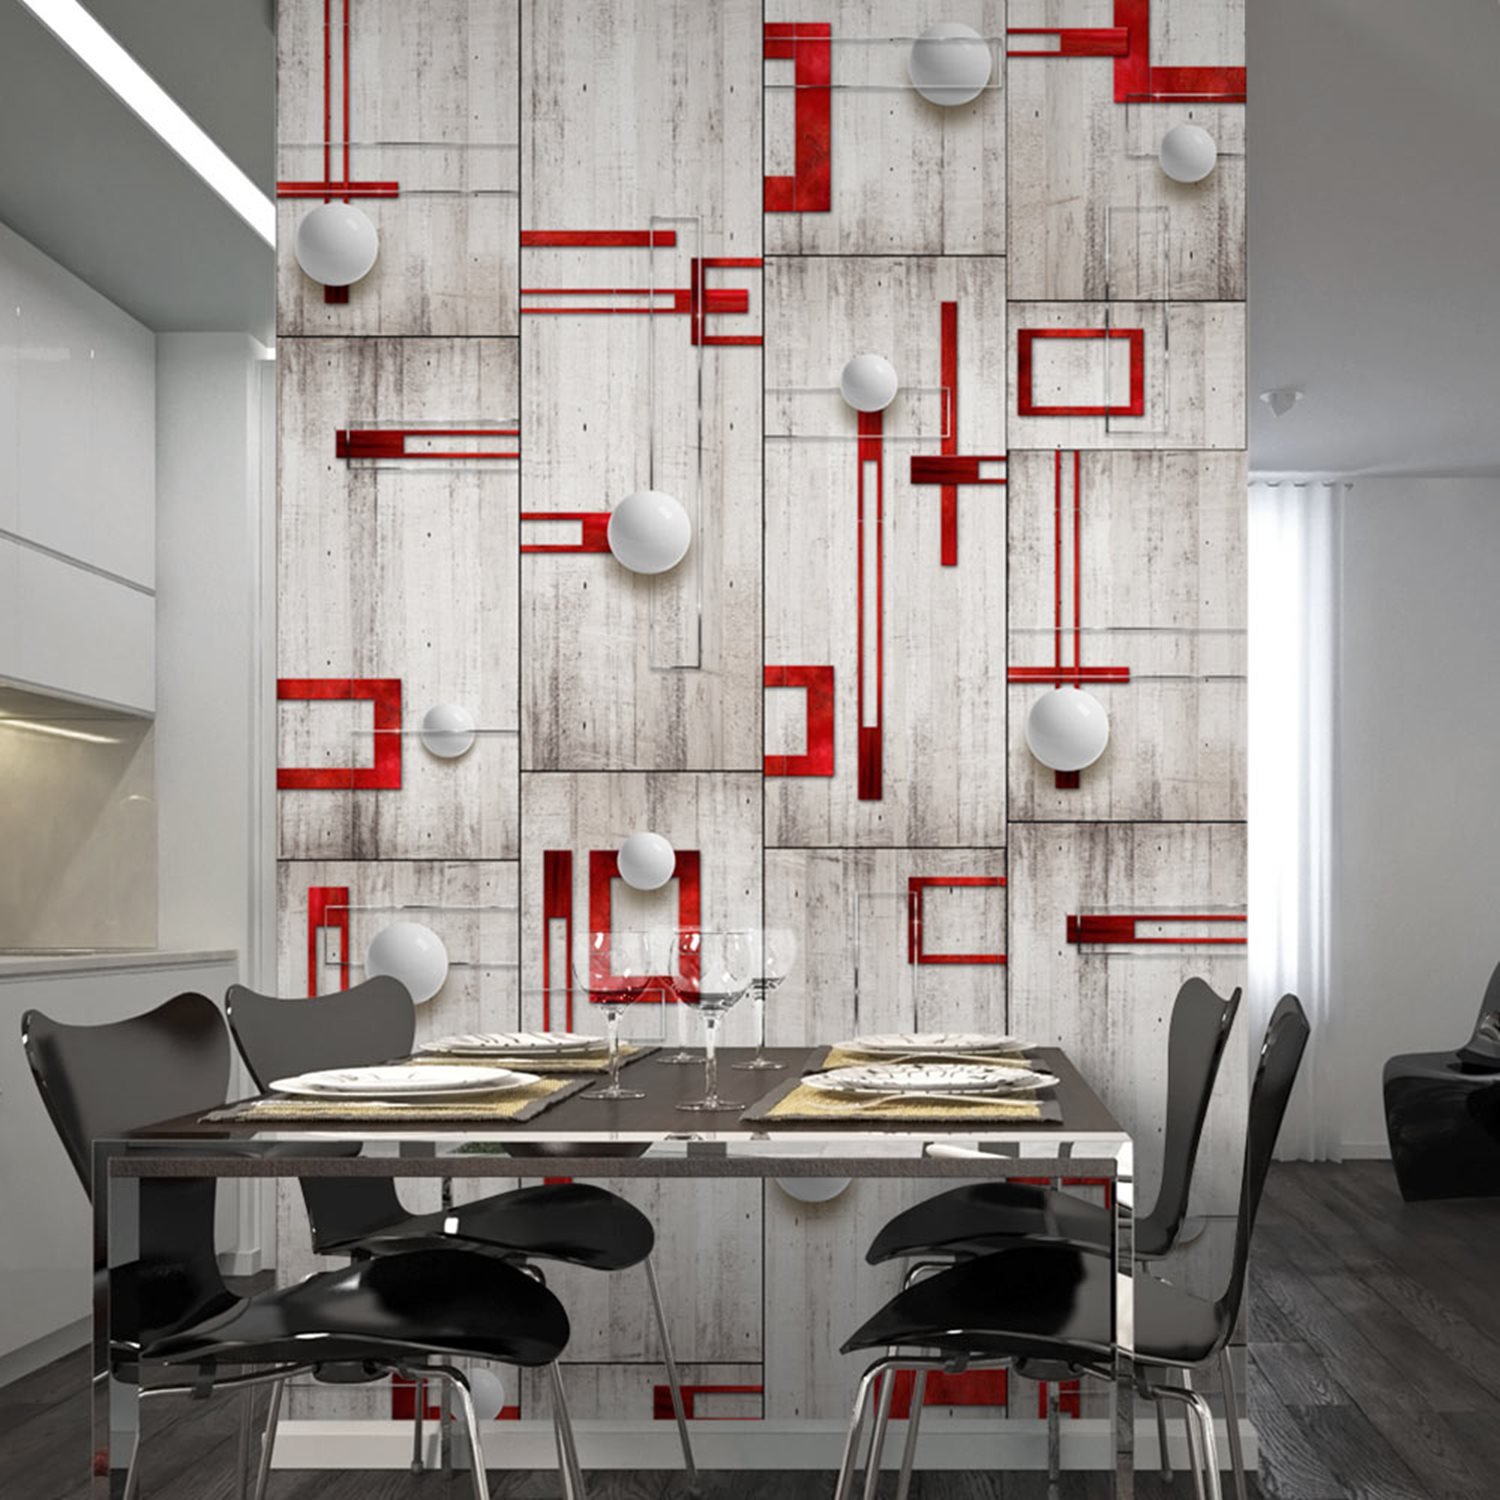 Φωτοταπετσαρία – Concrete, red frames and white knobs 50×1000